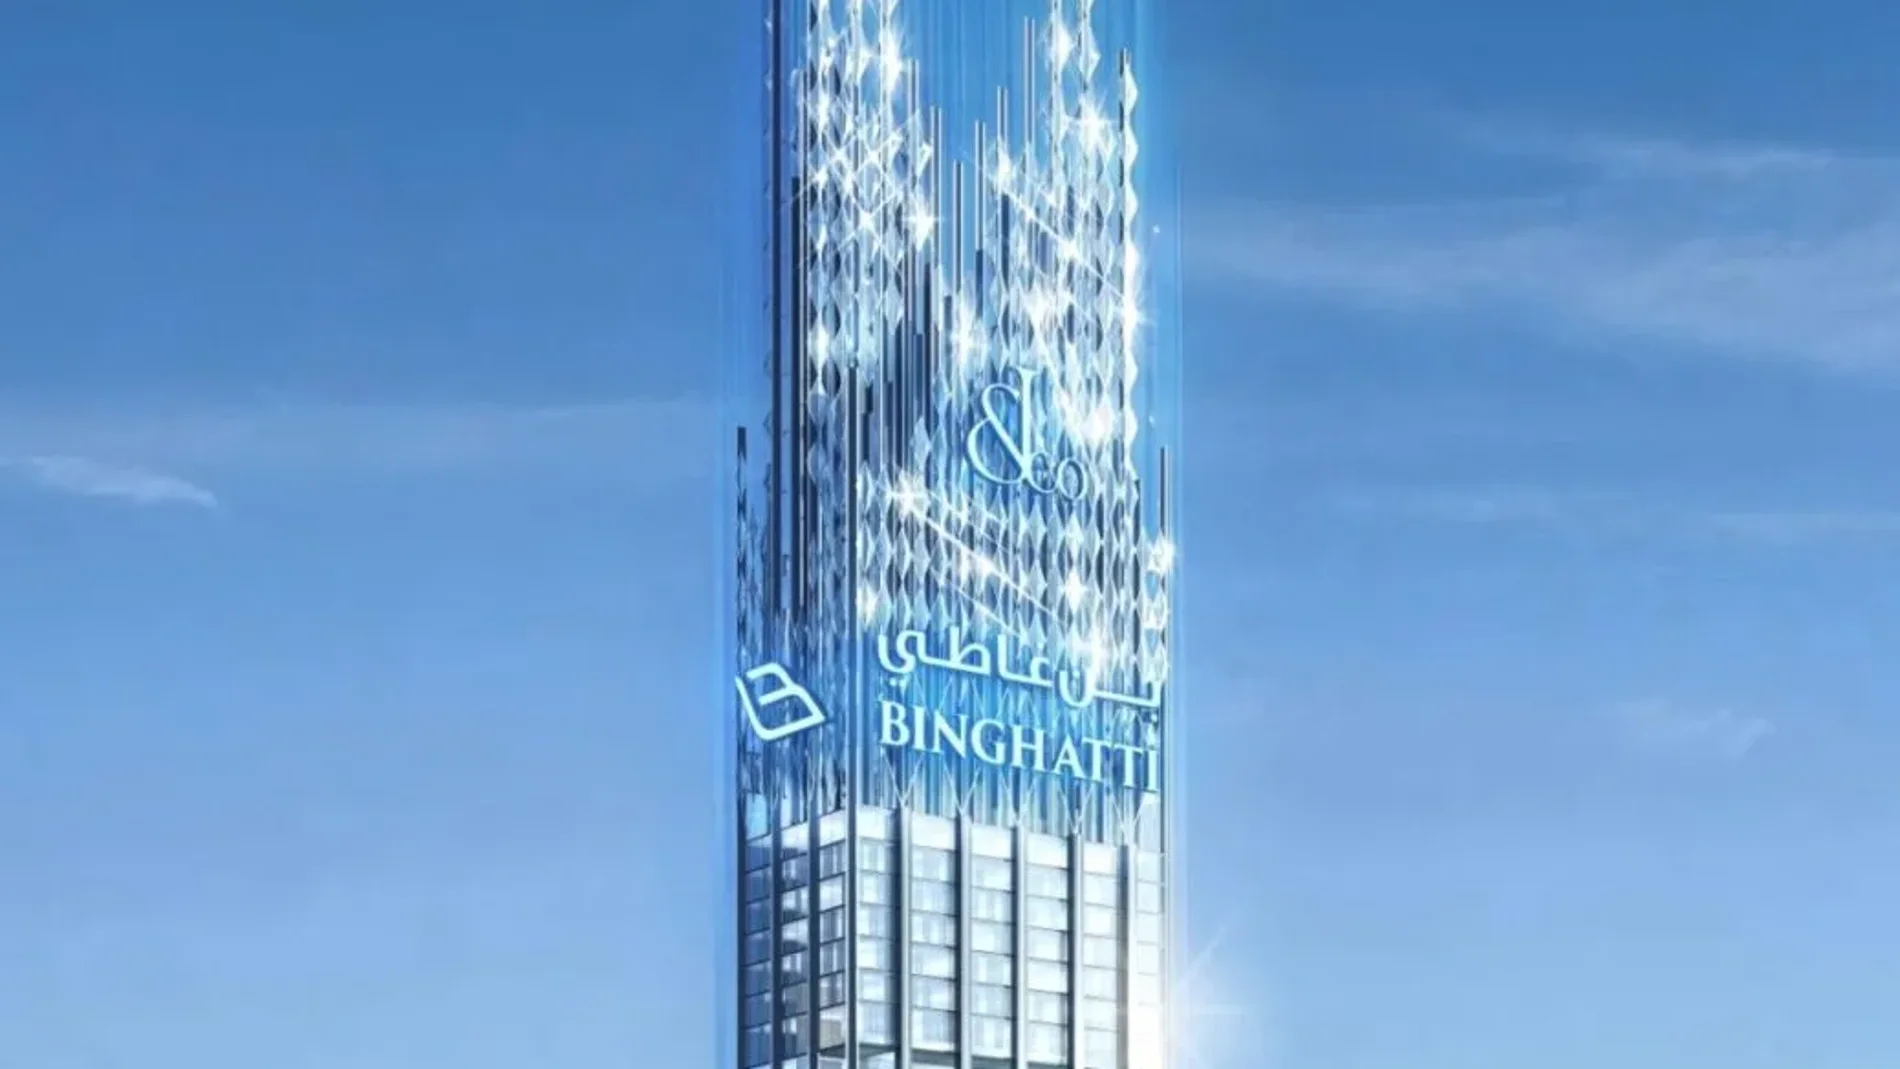 Prototipo del futuro rascacielos más alto del mundo.